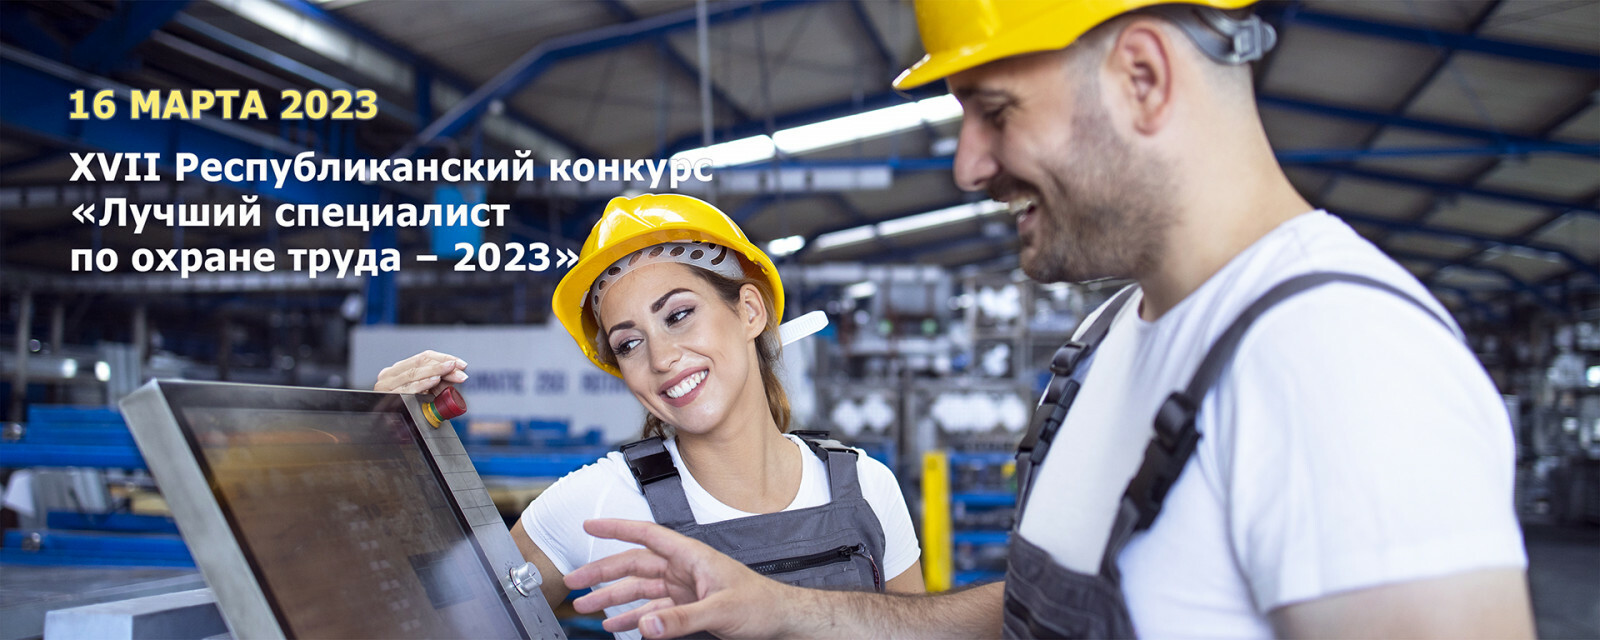 В Башкортостане пройдет республиканский конкурс «Лучший специалист по охране труда – 2023»